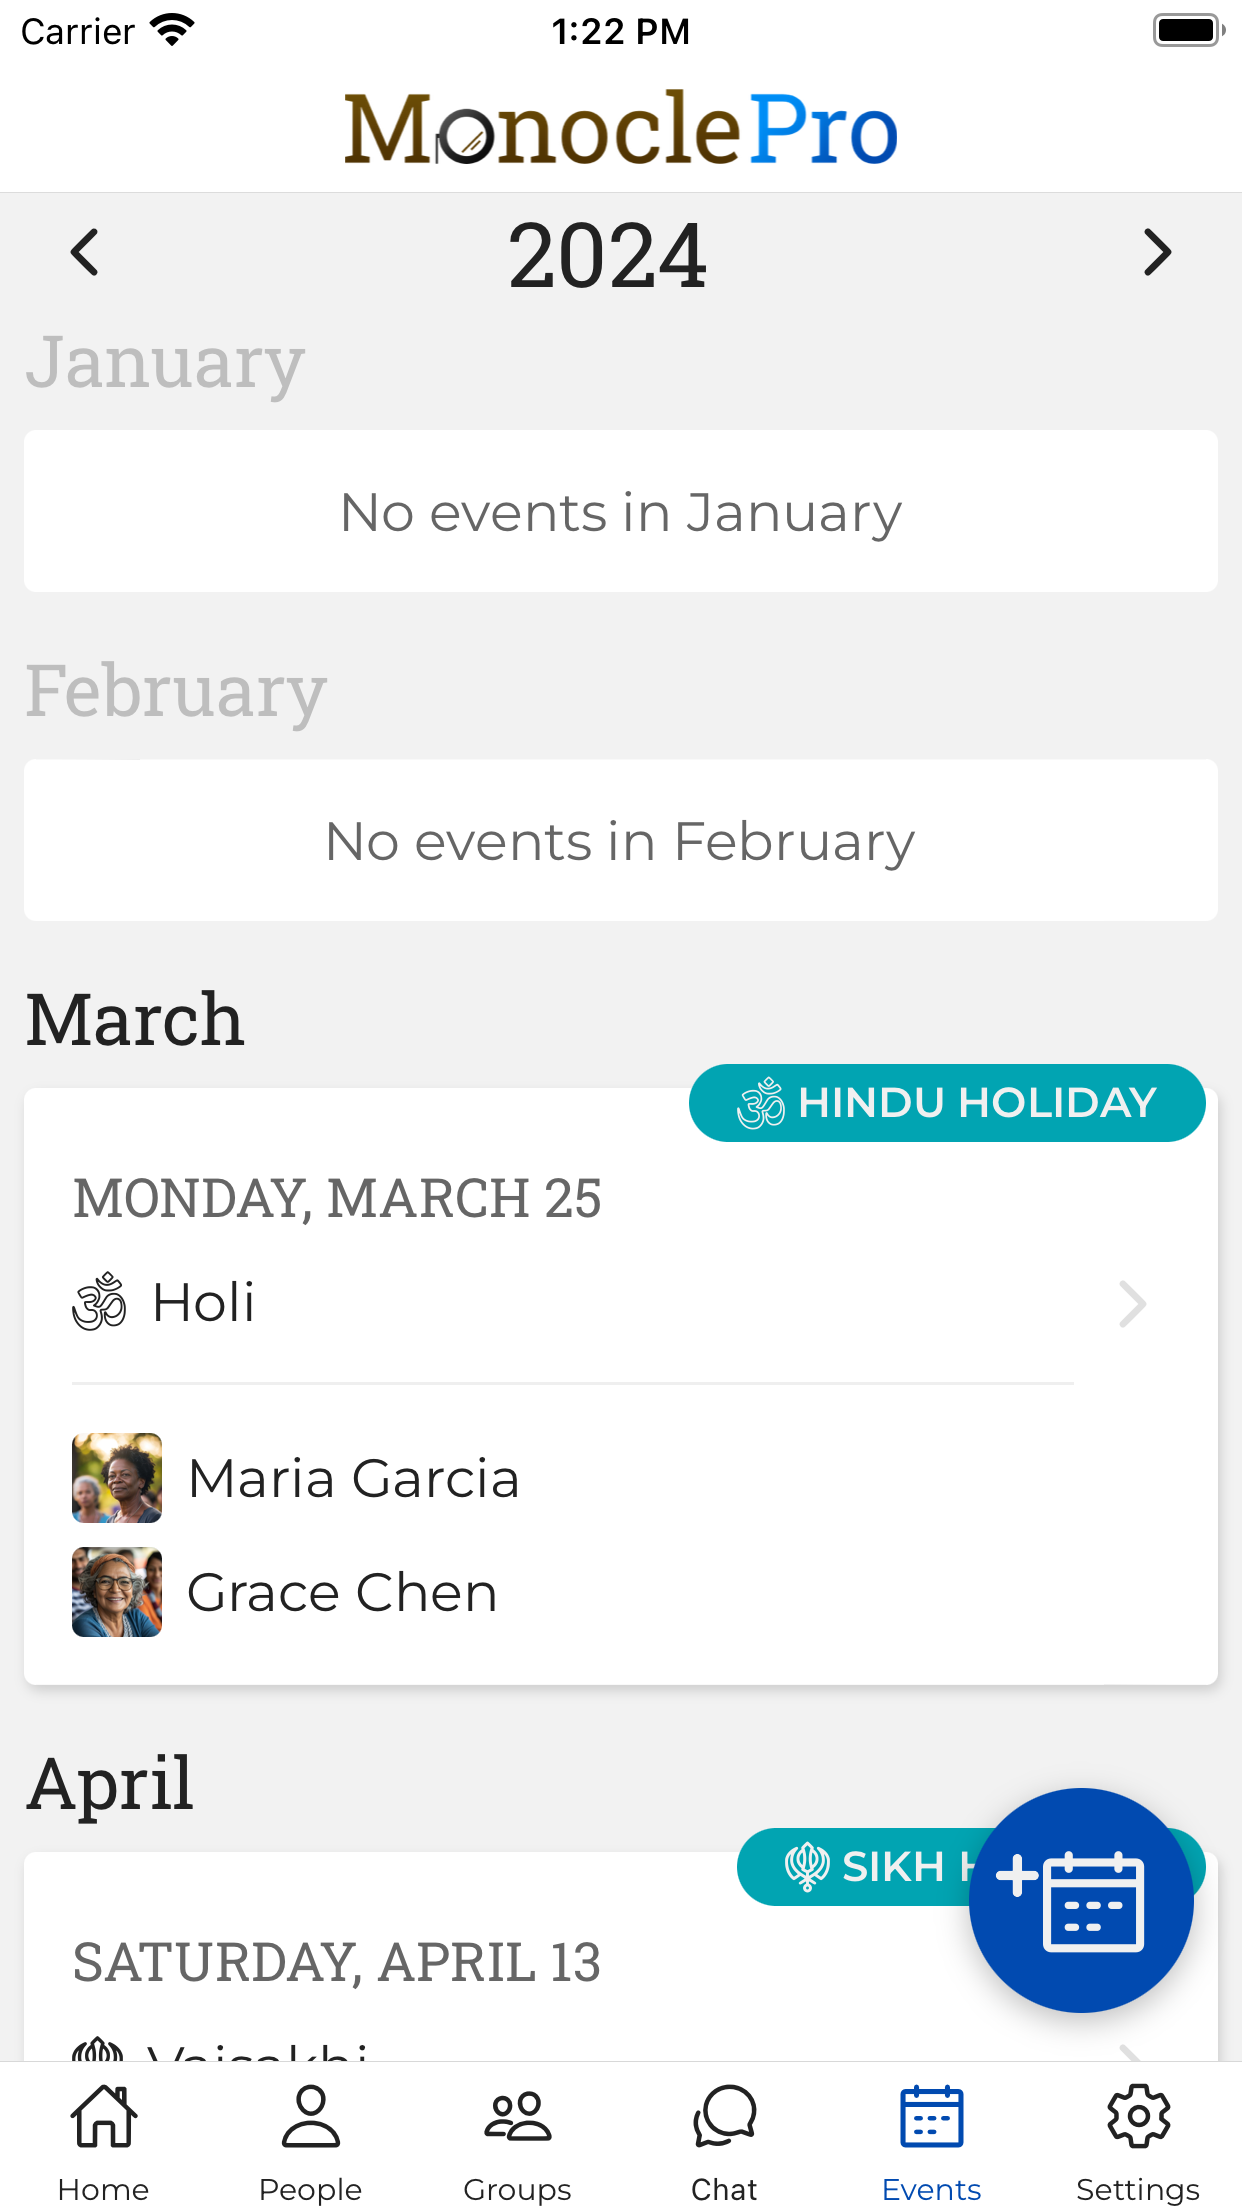 App screenshot - Events